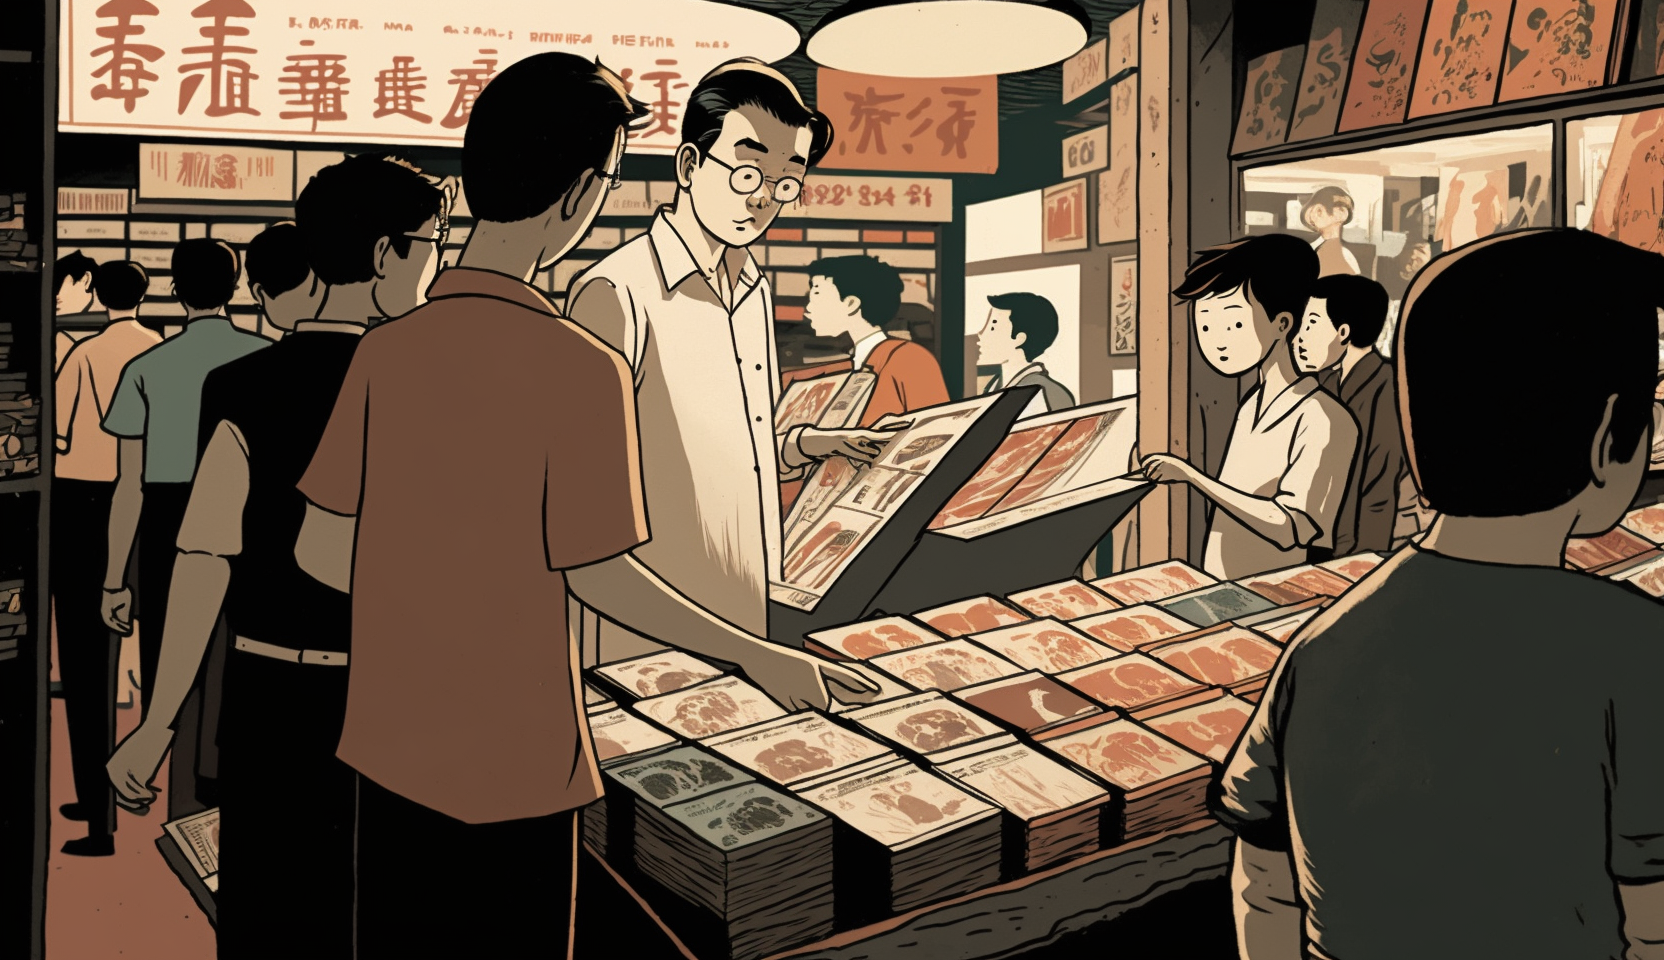 讀者通訊 #13: 養不起音樂的台灣市場